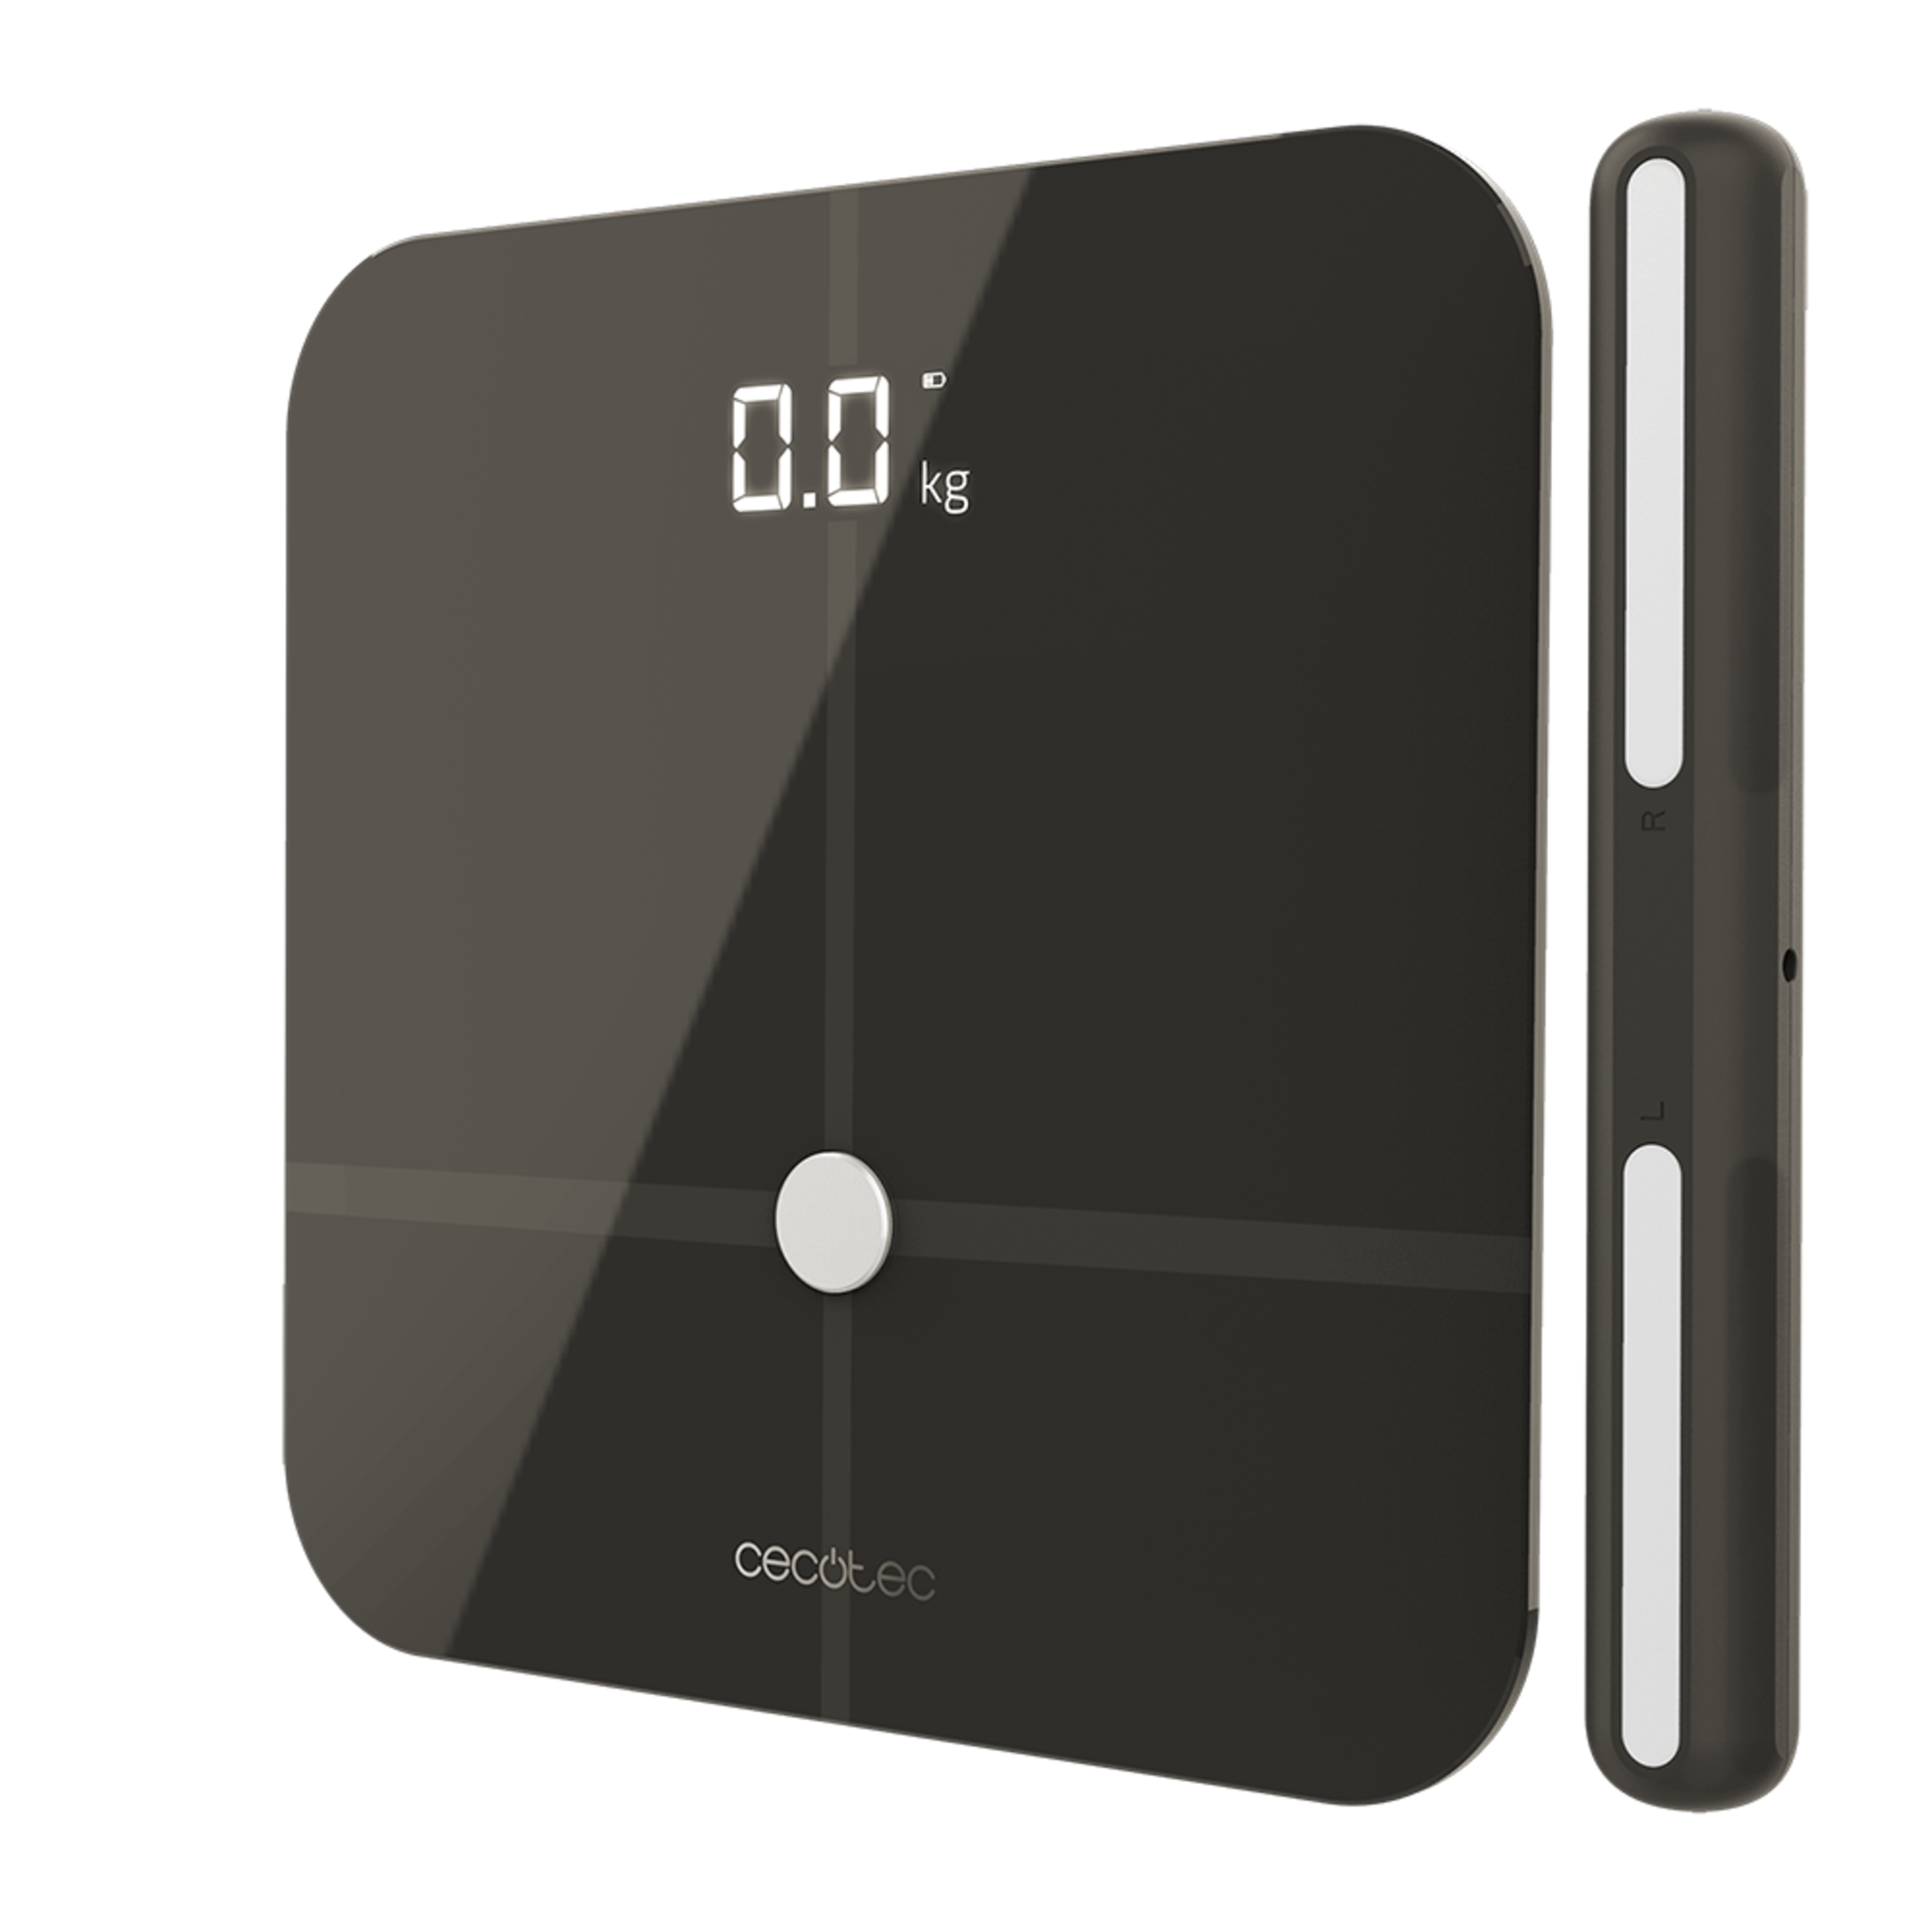 Pèse-personne Healthy Pro Dark Grey Pro. Avec app, connectivité Bluetooth, guidon avec capteurs pour mesurer la bioimpédance, 15 paramètres, design extra-plat